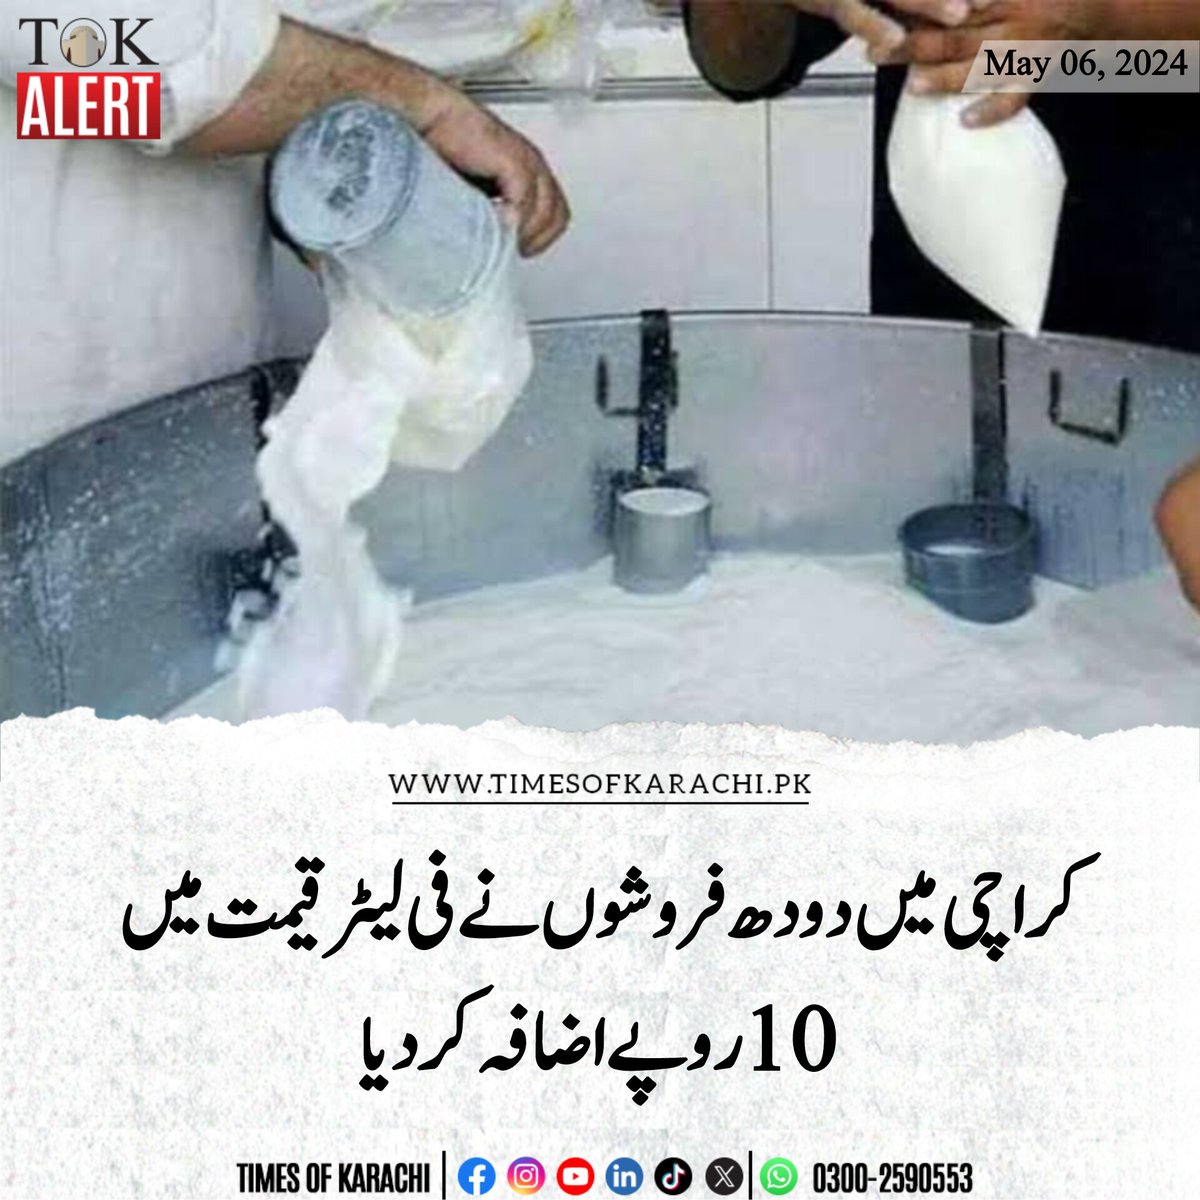 کراچی میں دودھ فروشوں نے ازخود دودھ کی قیمت میں 10 روپے فی لیٹر اضافہ کر دیا جس کے بعد ناگوری شاپس پر فی کلو دودھ 210 روپے میں فروخت کیا جا رہا ہے۔ واضح رہے سرکاری سطح پر دودھ کی قیمت 200 روپے فی لیٹر مقرر ہے۔ آپکے علاقے دودھ کس قیمت پر فروخت ہورہا ہے؟ #TOKAlert #Karachi